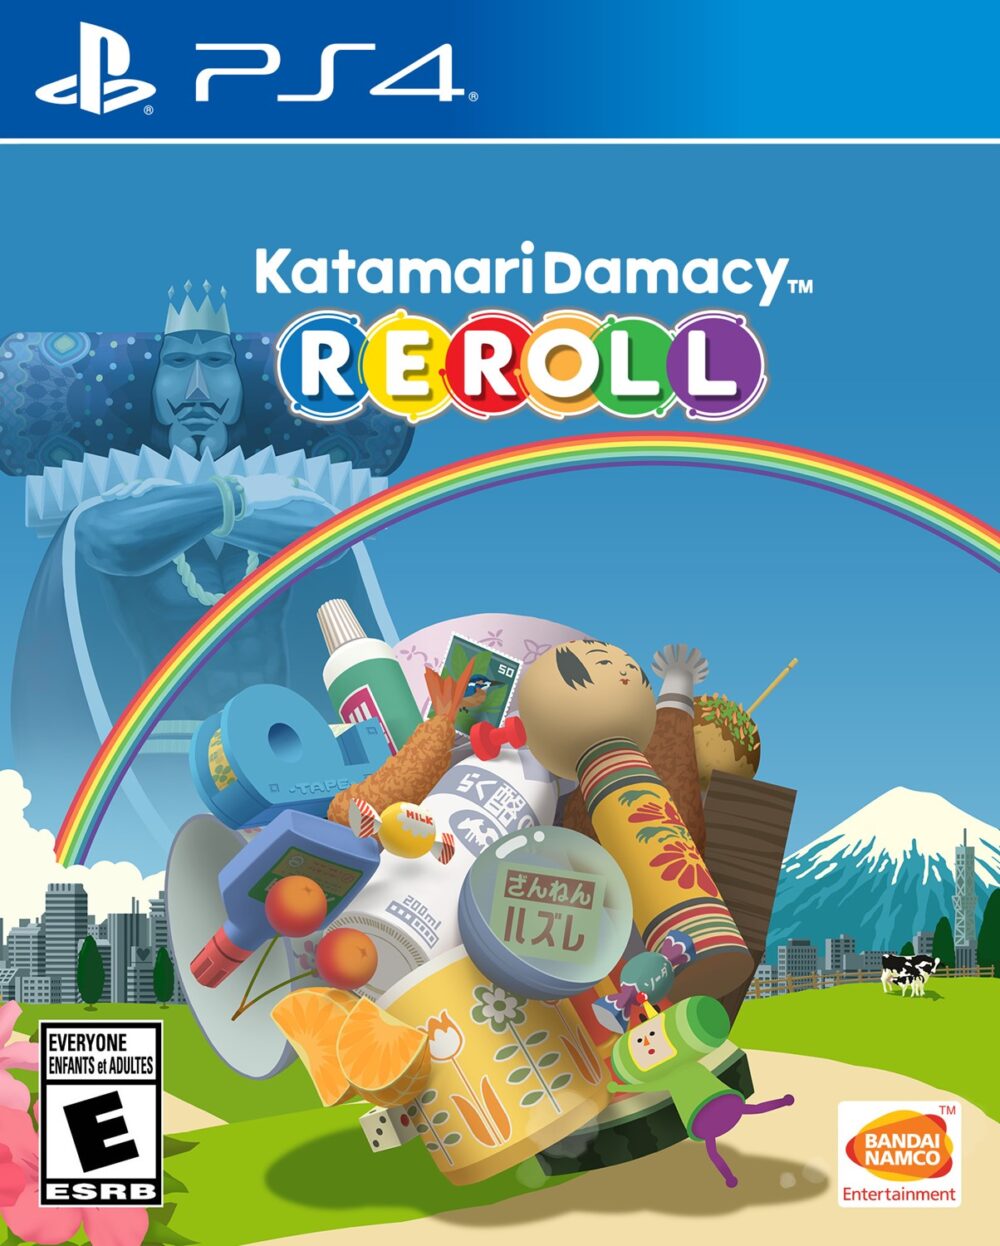 Katamari Damacy REROLL for PS4